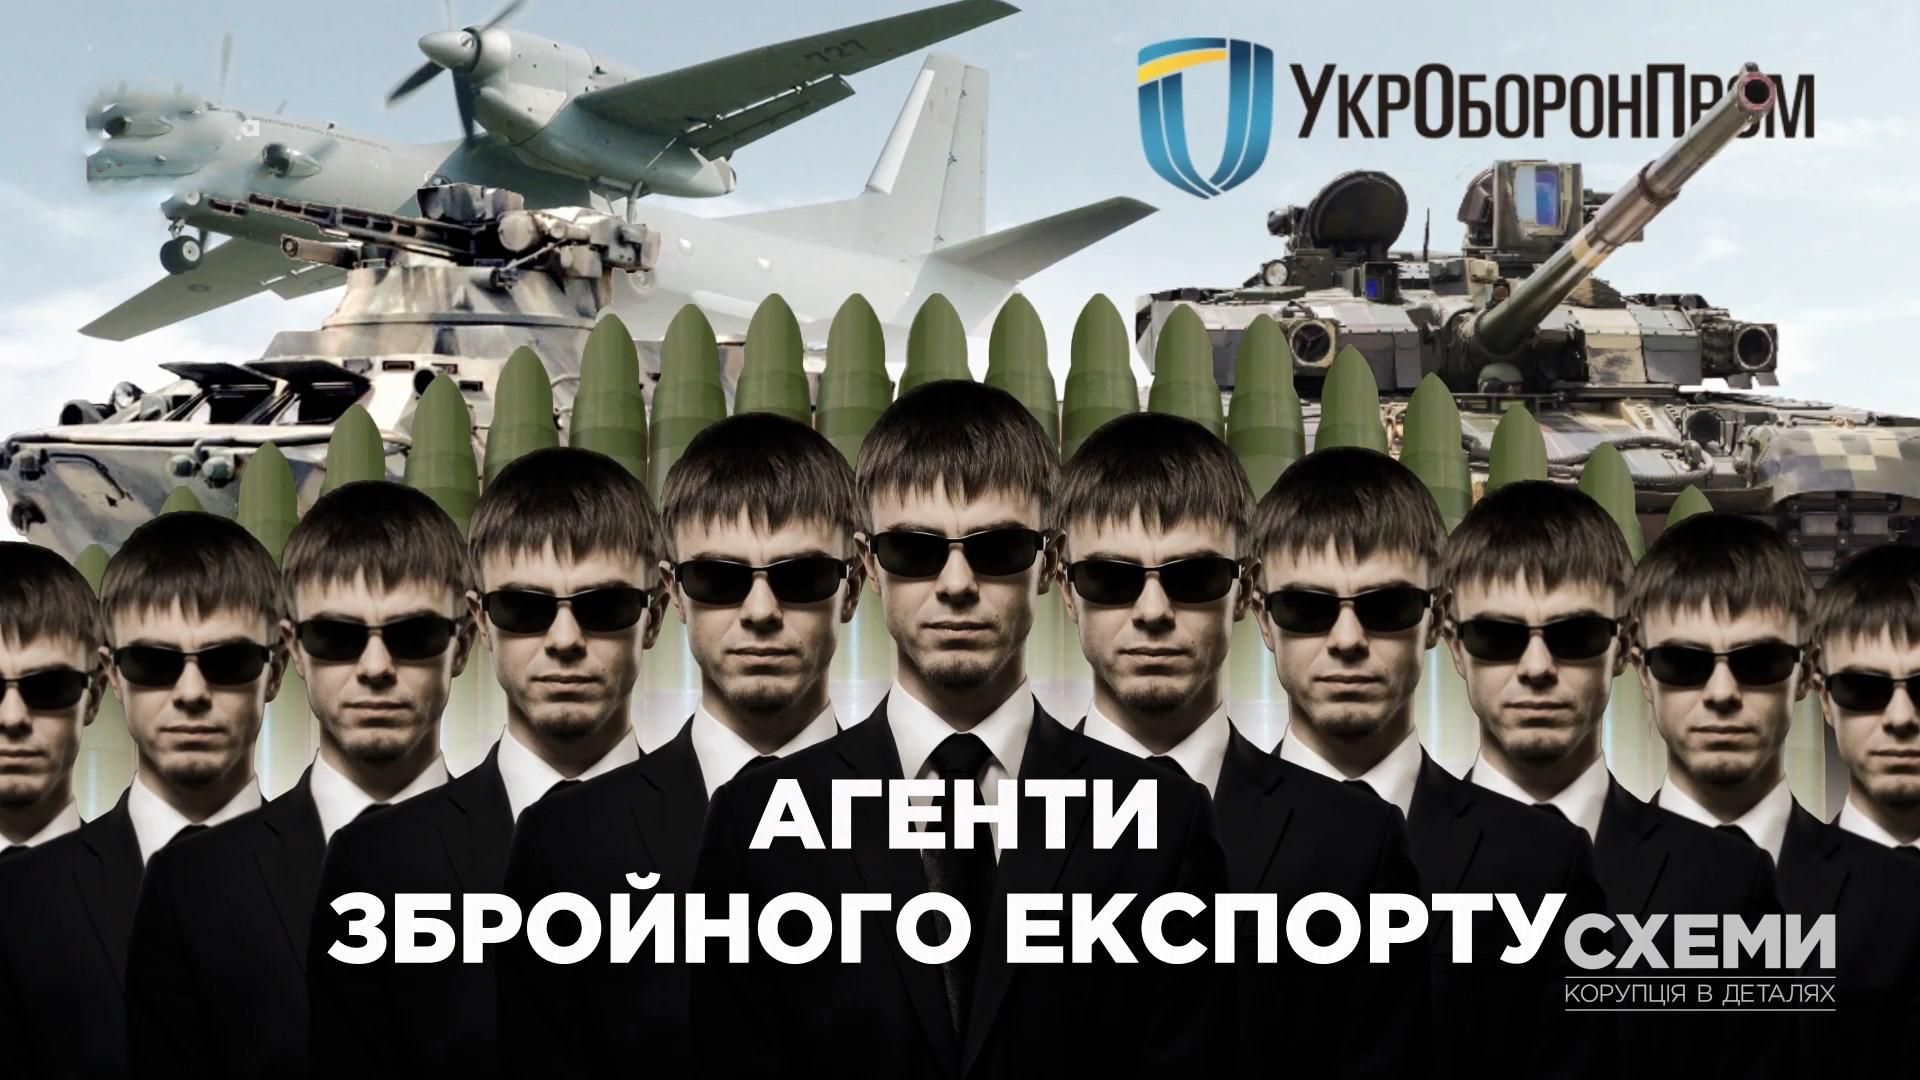 Как происходит экспорт украинского оружия и военной техники: тайные незаконные операции